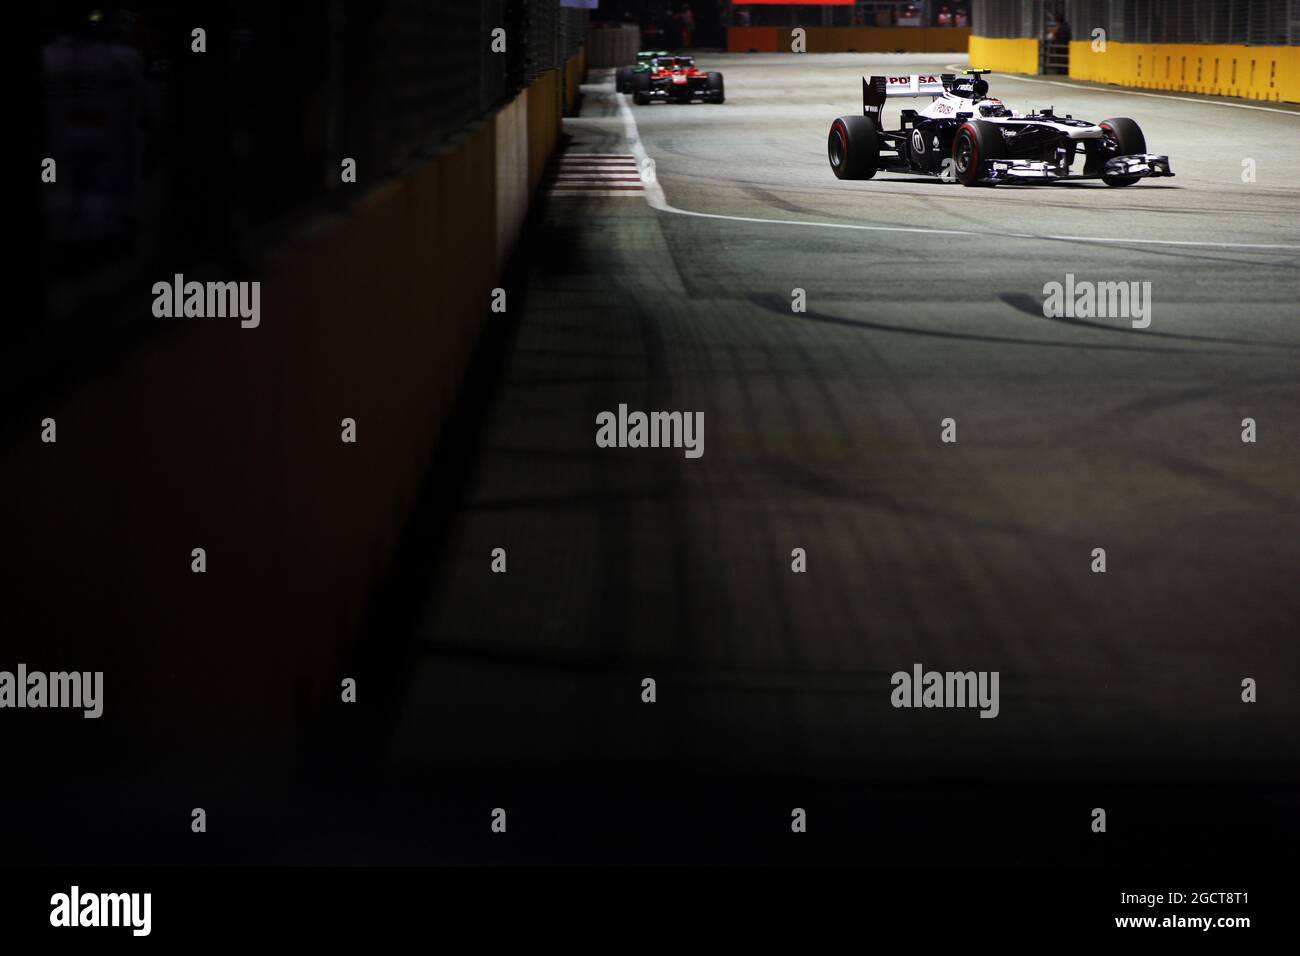 Valtteri Bottas (fin) Williams FW35. Gran Premio di Singapore, domenica 22 settembre 2013. Circuito Marina Bay Street, Singapore. Foto Stock